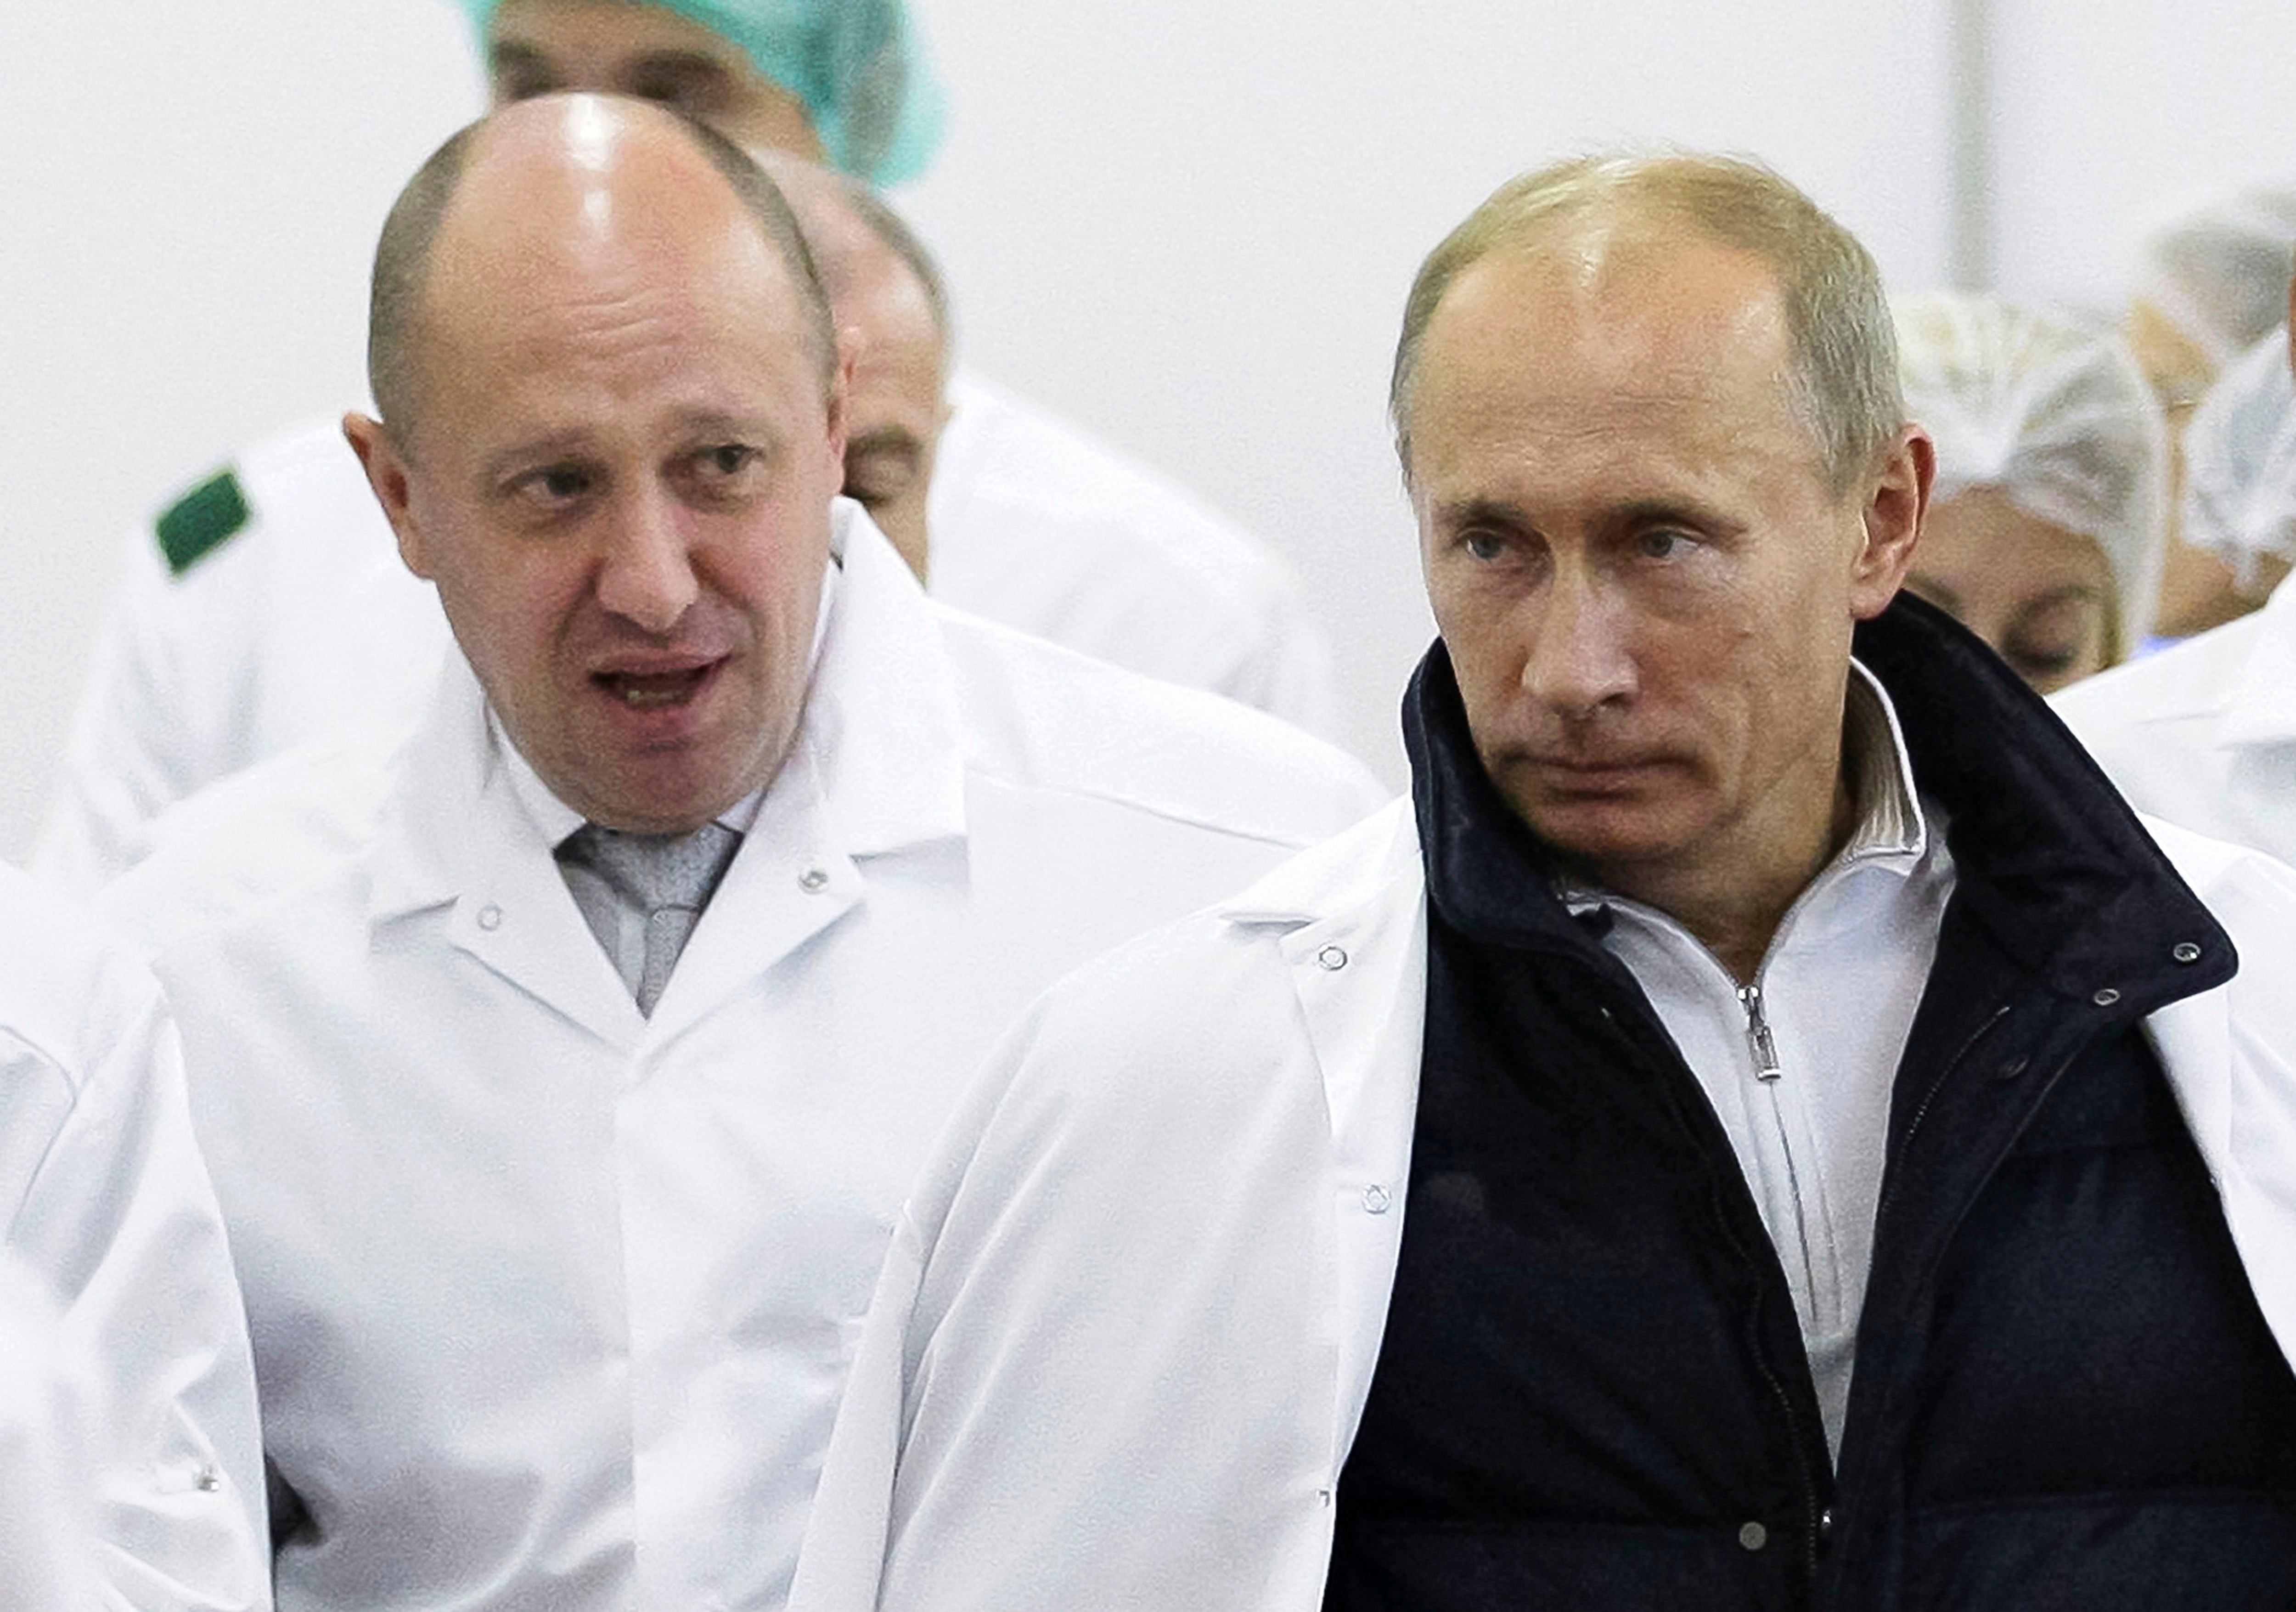 Yevgeny Prigozhin le muestra a Putin su fábrica de comidas, el 20 de septiembre de 2010, en las afueras de San Petersburgo, Rusia. Se habían conocido en esa ciudad a fines del siglo pasado.(Alexei Druzhinin, Sputnik, vía AP)